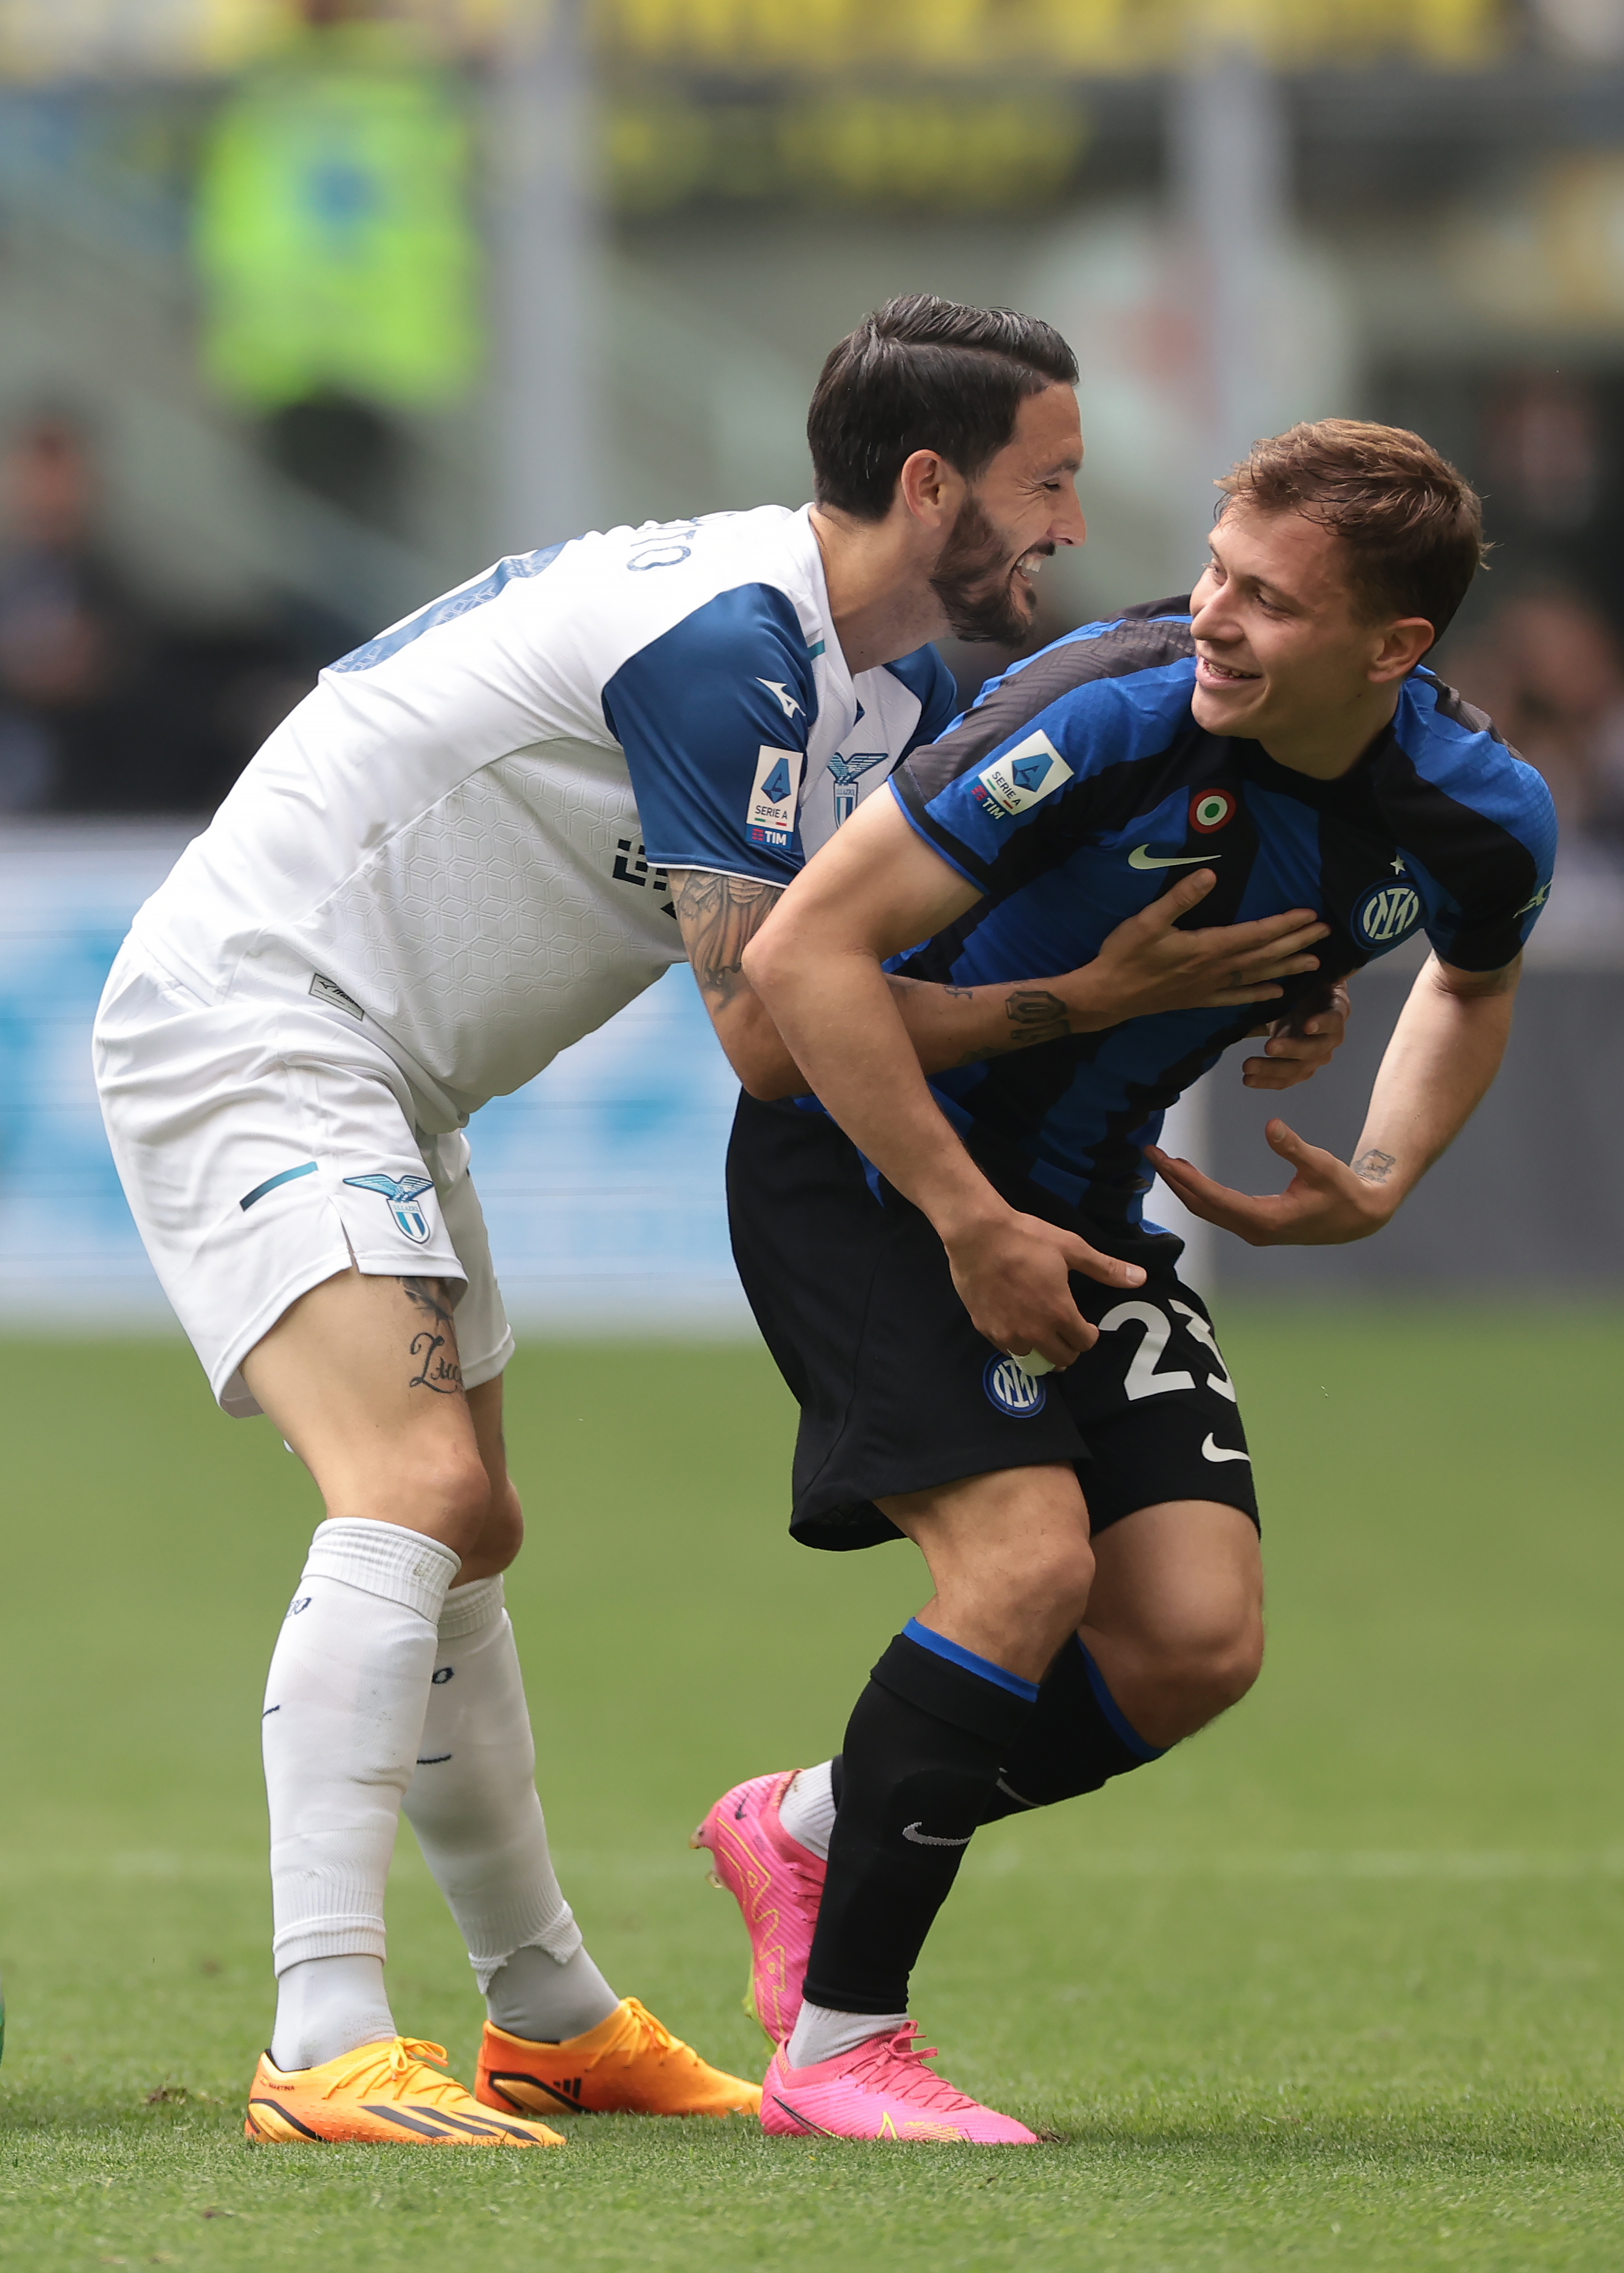 FC Internazionale v SS Lazio - Serie A